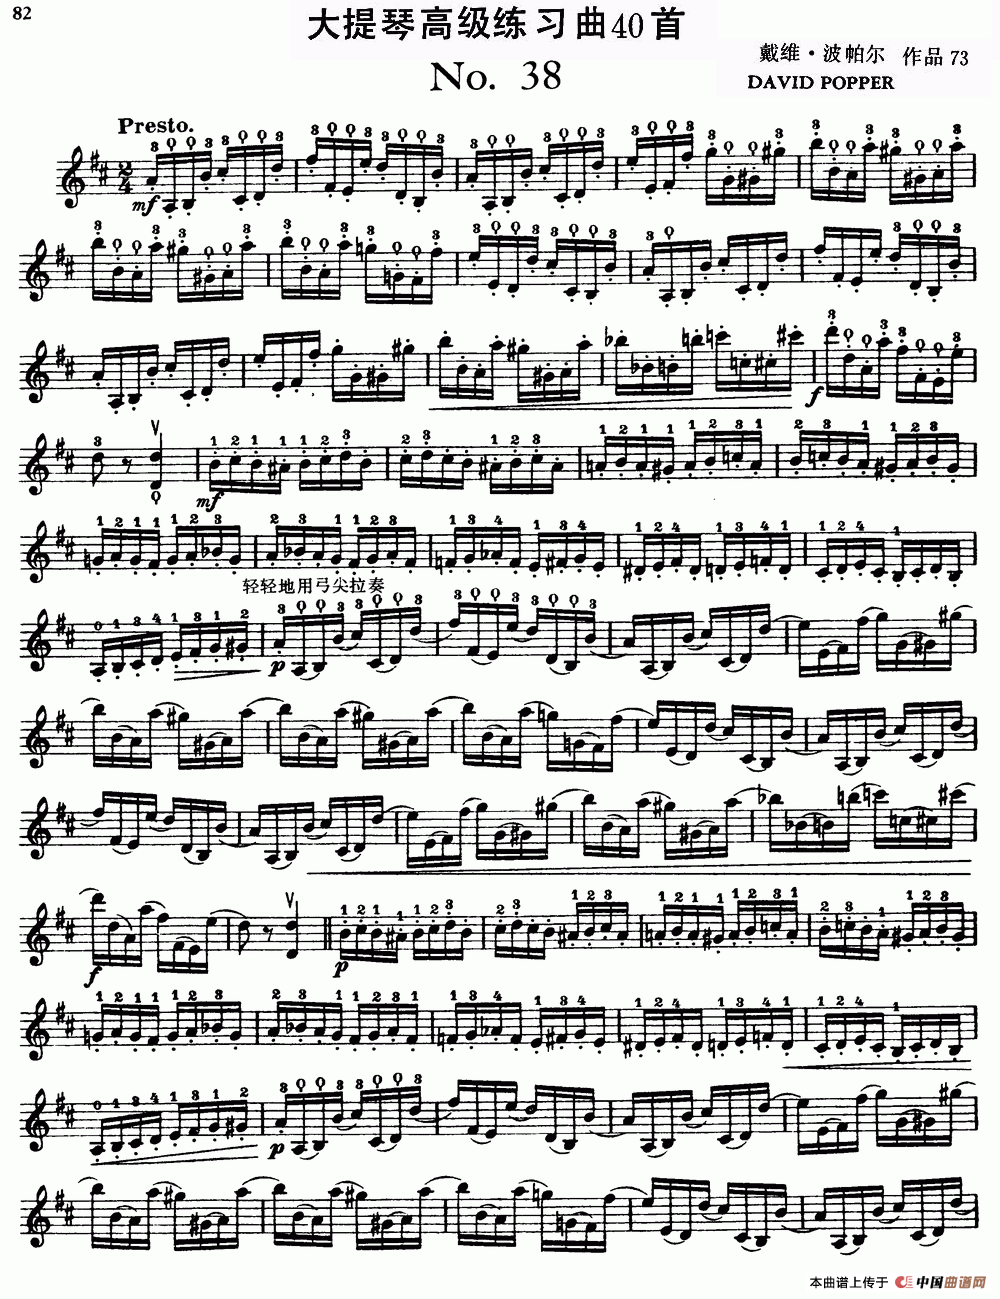 大提琴高级练习曲40首 No.38